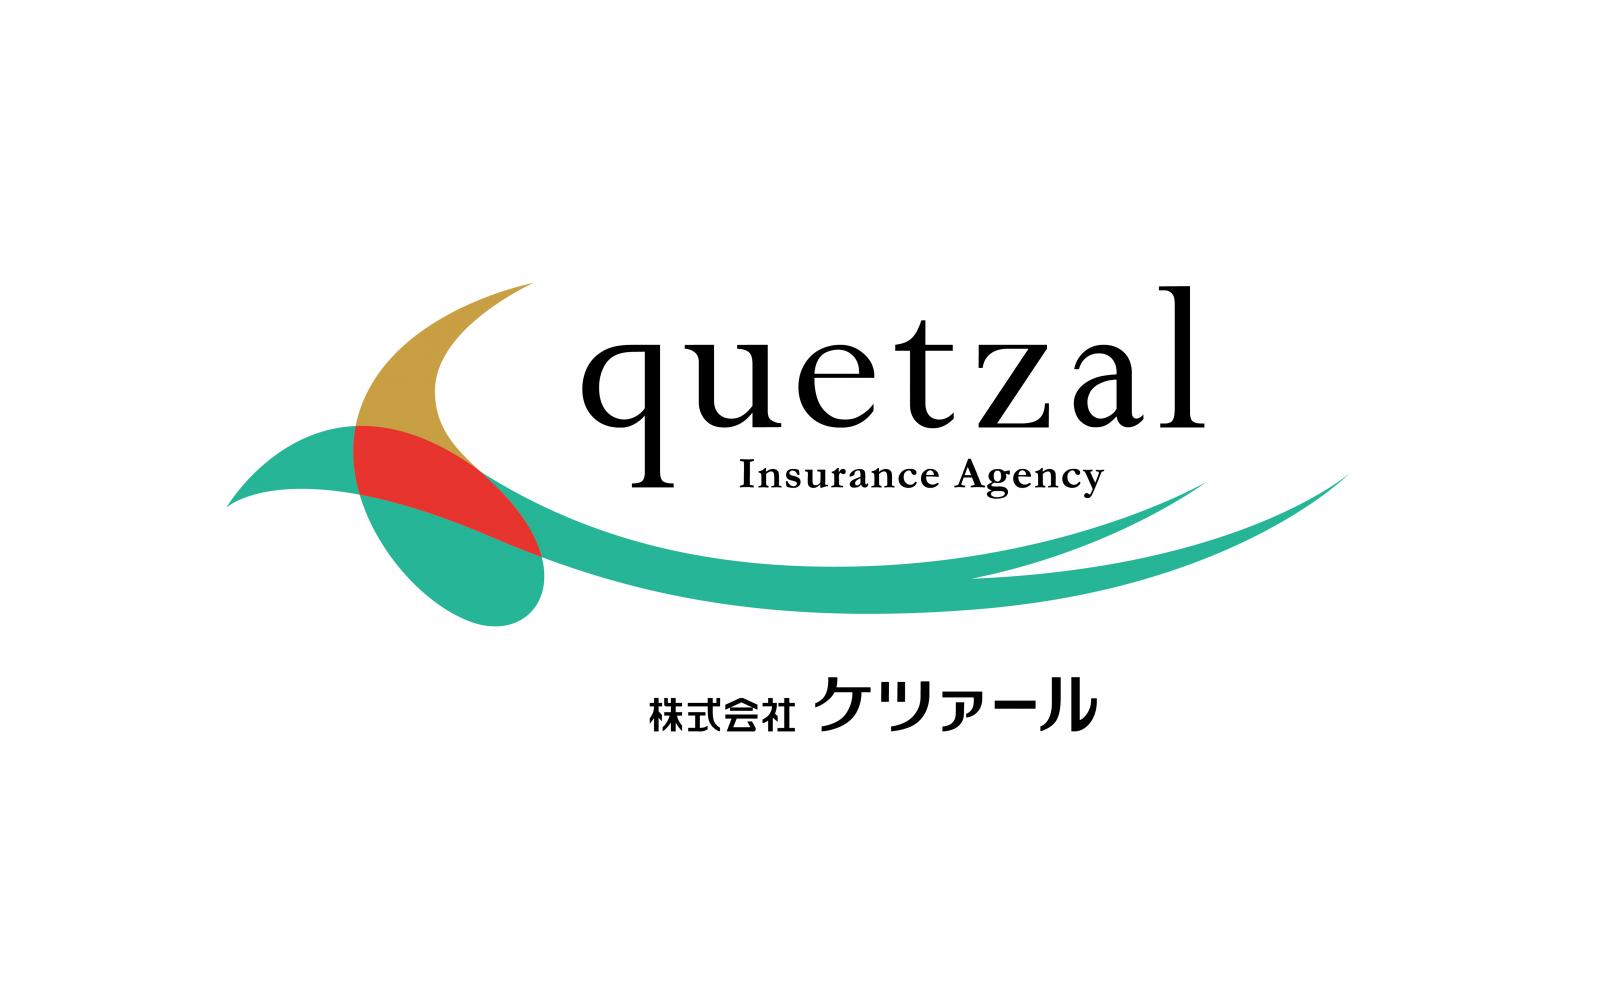 ロゴ:株式会社ケツァール